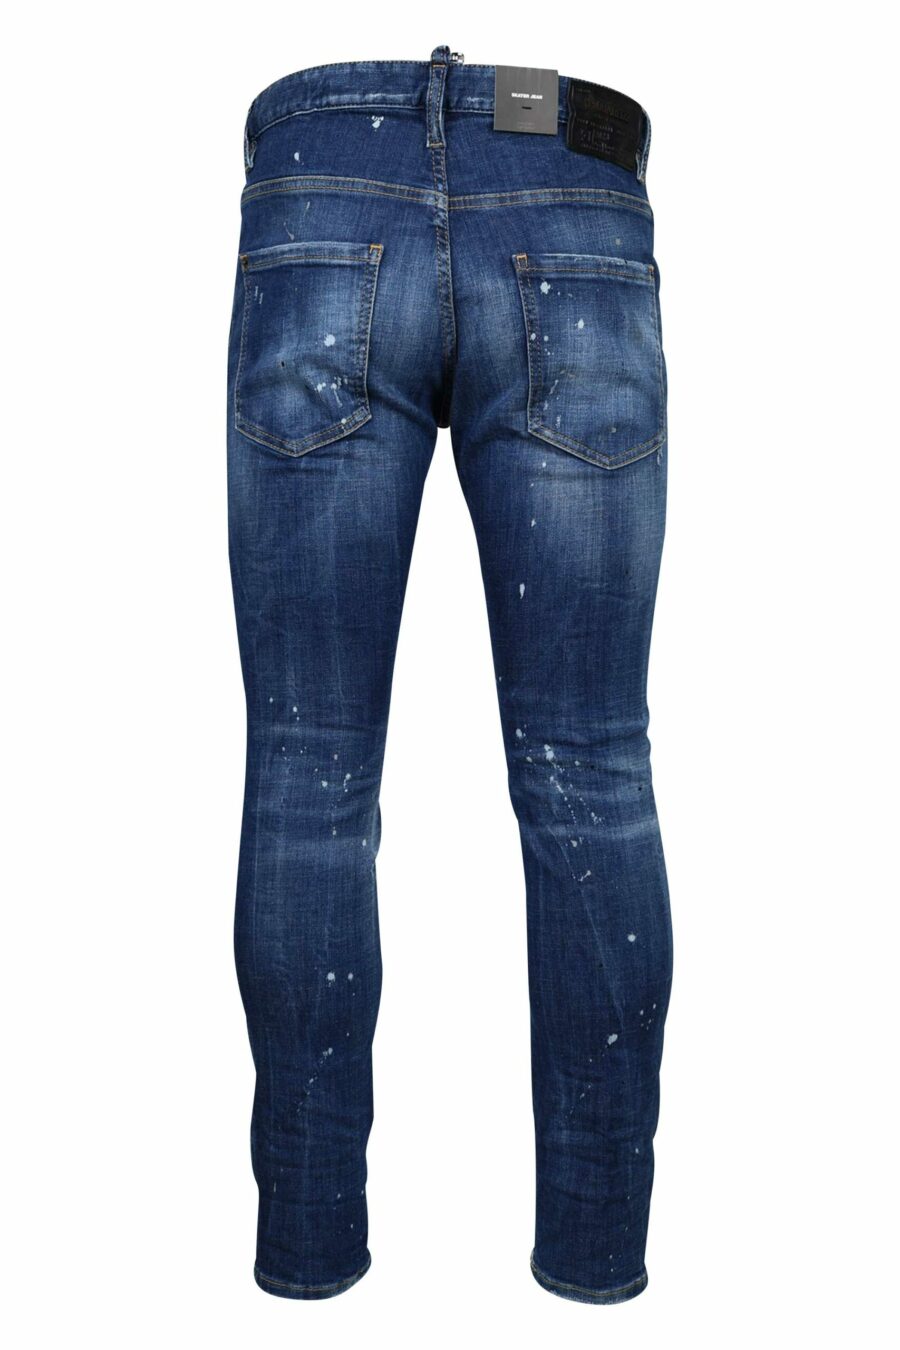 Pantalón vaquero "skater jean" azul con rotos y desgastado - 8054148124687 2 1 scaled